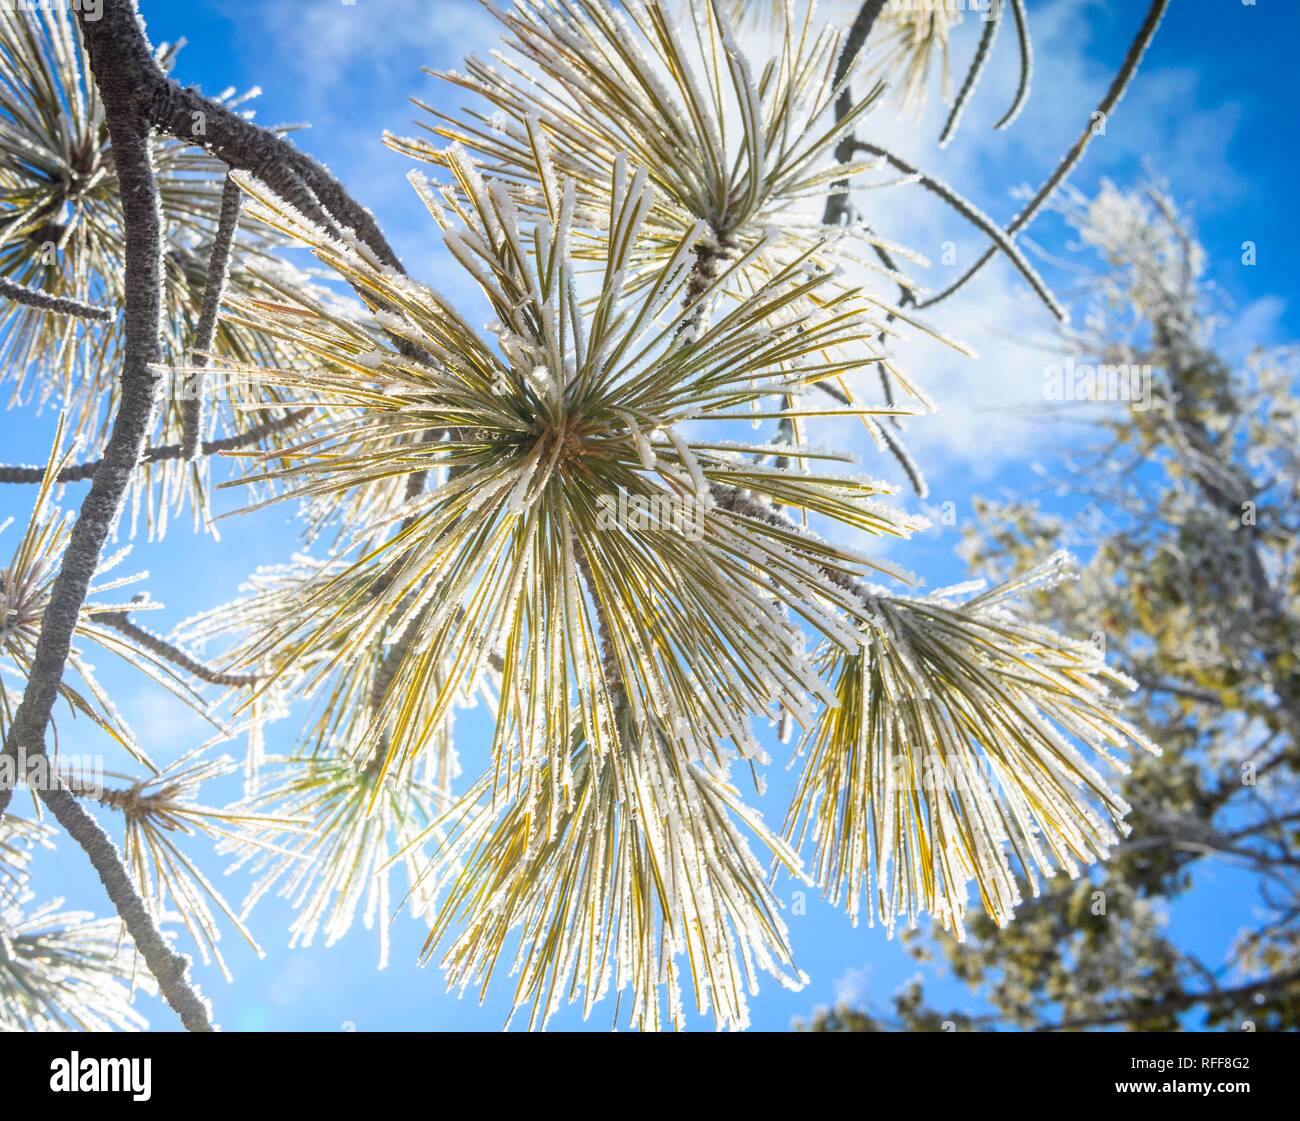 Les aiguilles d'un sapin de Douglas (Pseudotsuga menziesii) recouvert de gelée blanche en hiver, Navajo Loop Trail, Parc National de Bryce Canyon Banque D'Images